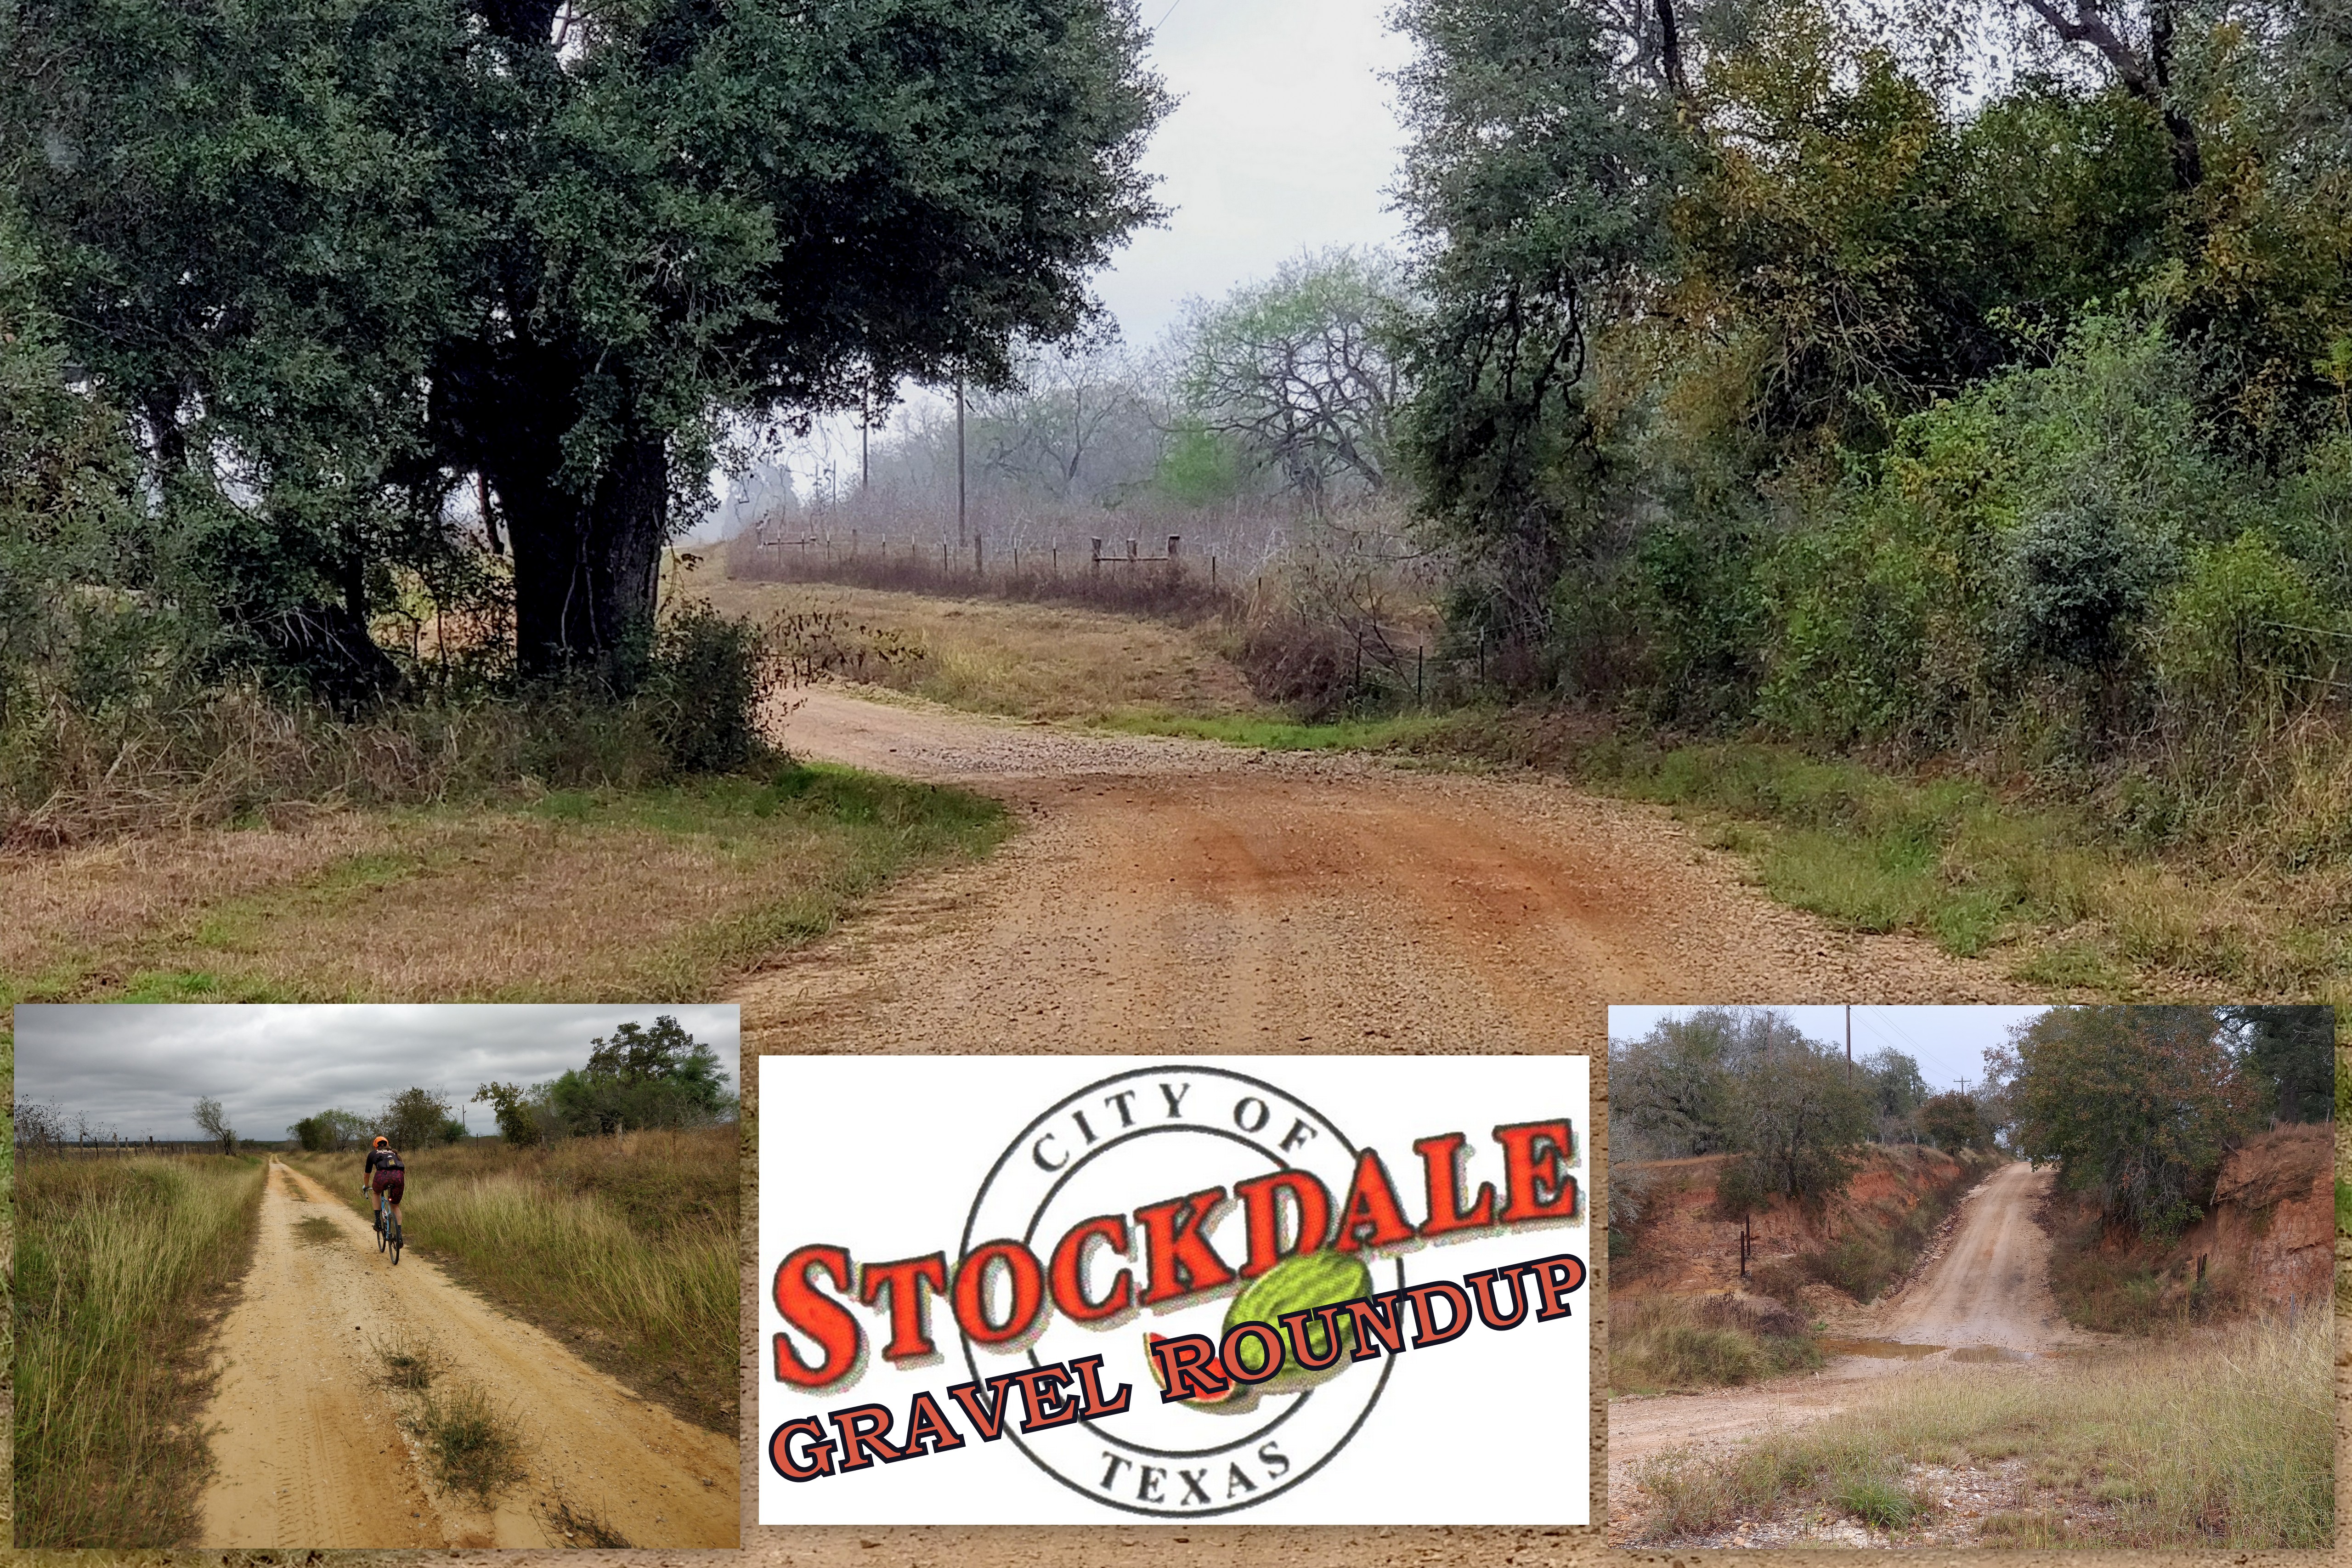 Stockdale Gravel Roundup